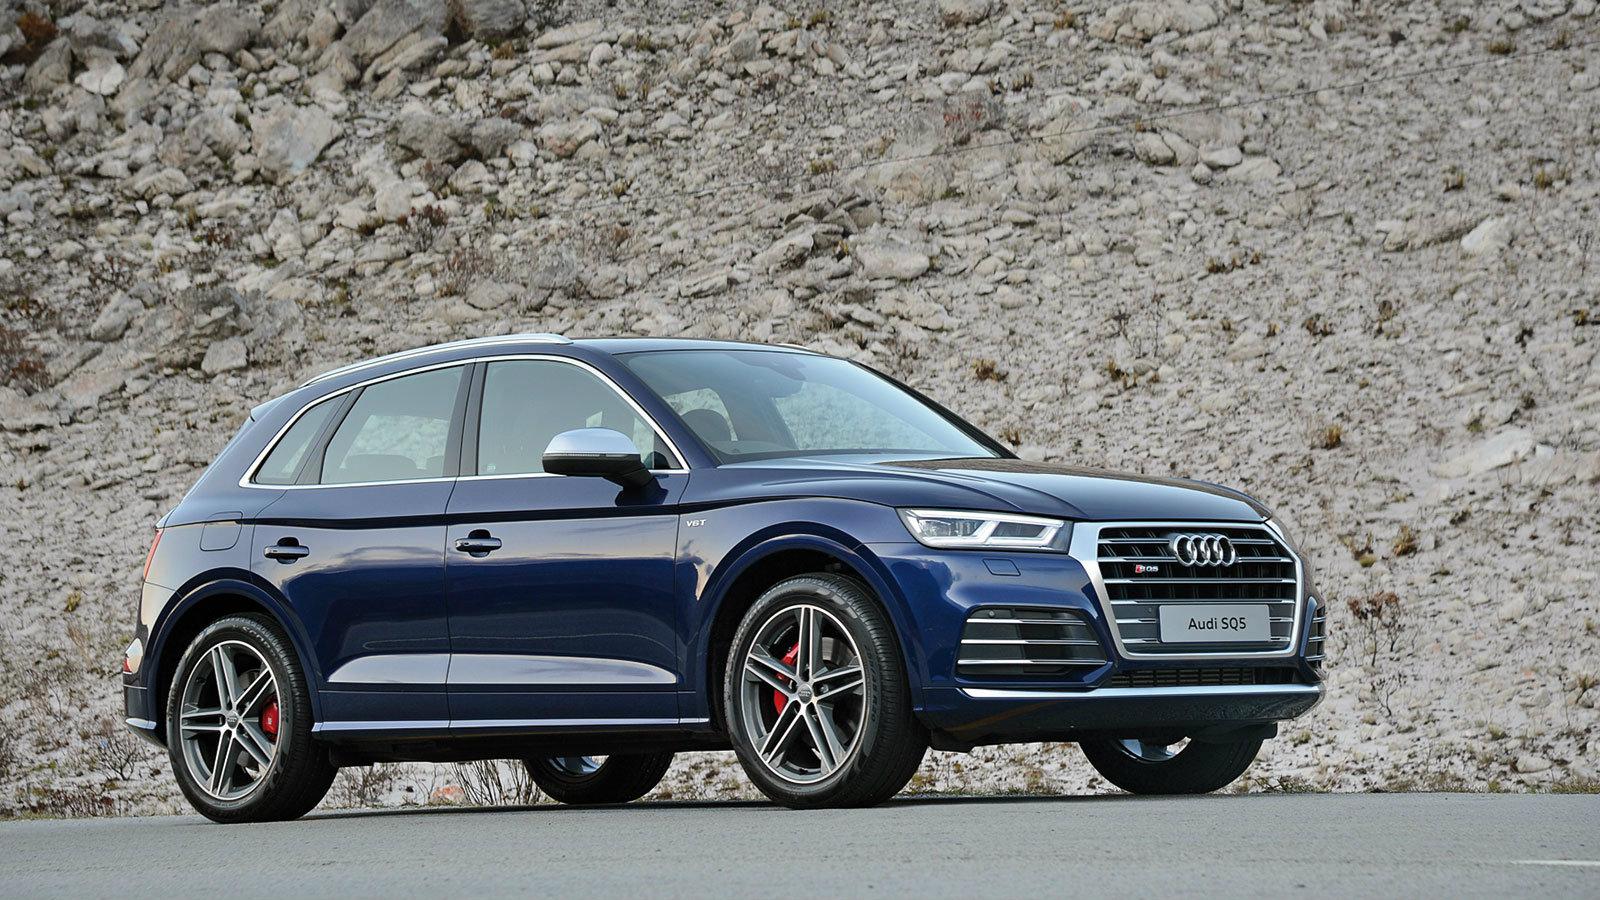 Το εξακύλινδρο σύνολο των 700ΝΜ ροπής δικαιολογεί την απόφαση της Audi να μην εγκαταλείψει ακόμα τους diesel κινητήρες.